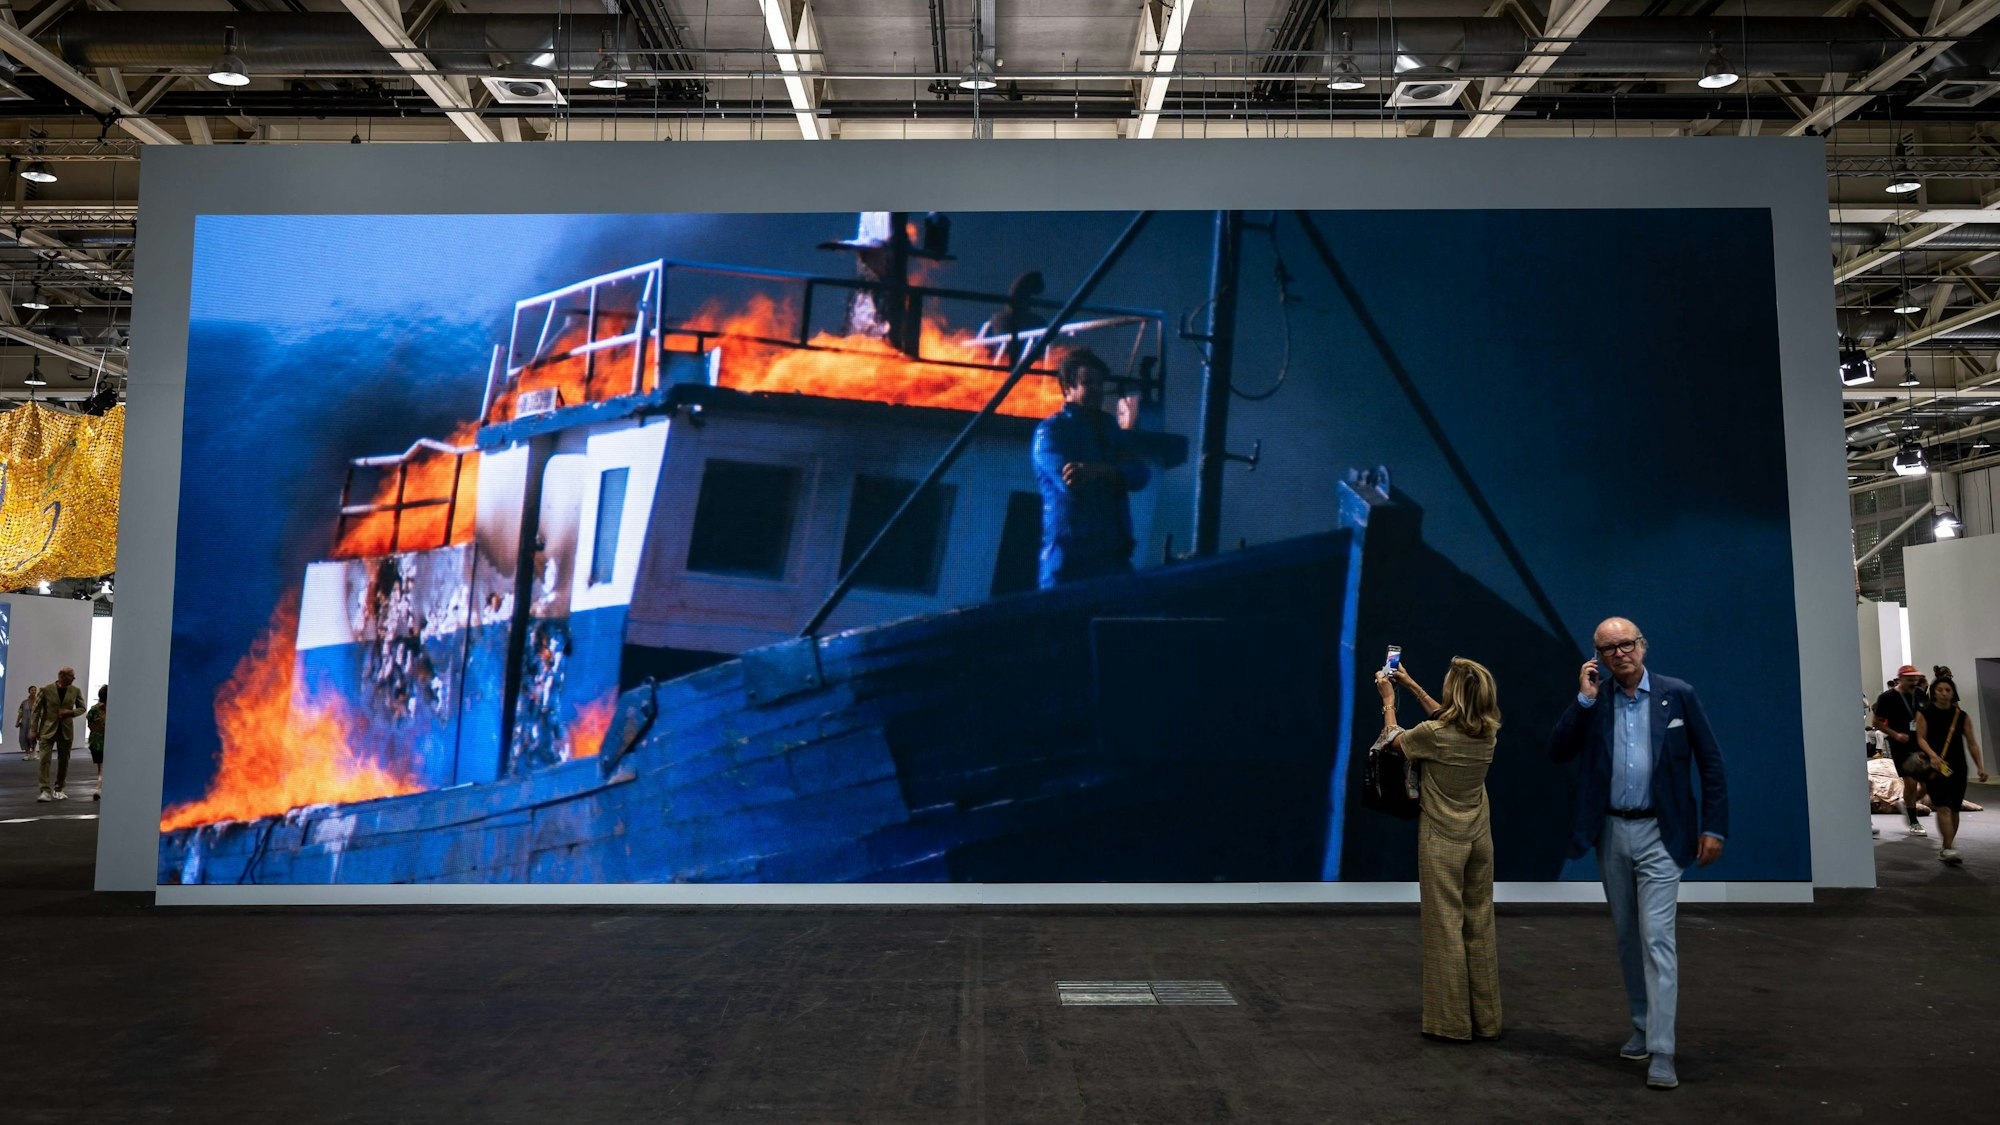 Besucher fotografieren das große Bild. Darauf ist der Künstler am Bug eines brennenden Schiffs zu sehen.